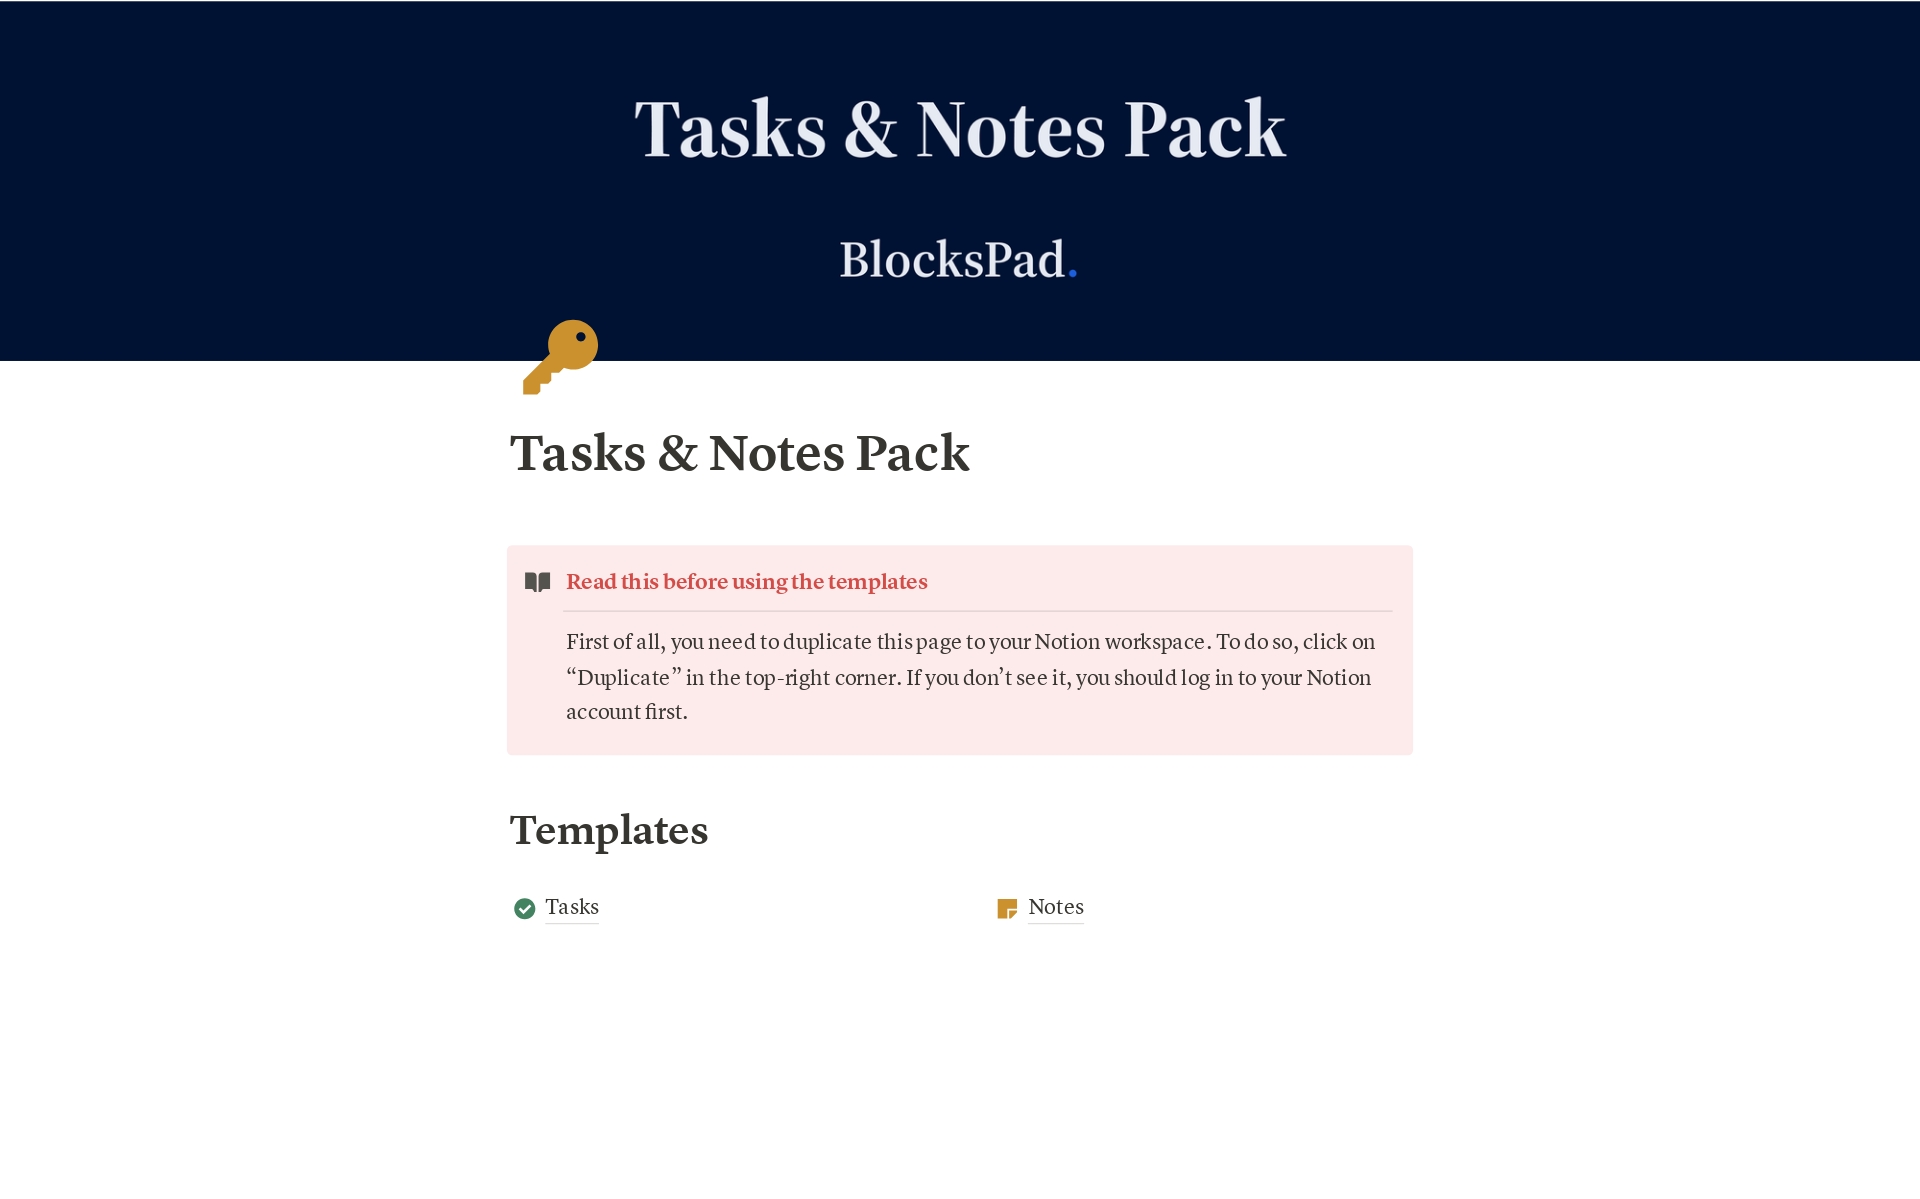 Aperçu du modèle de Tasks & Notes Pack